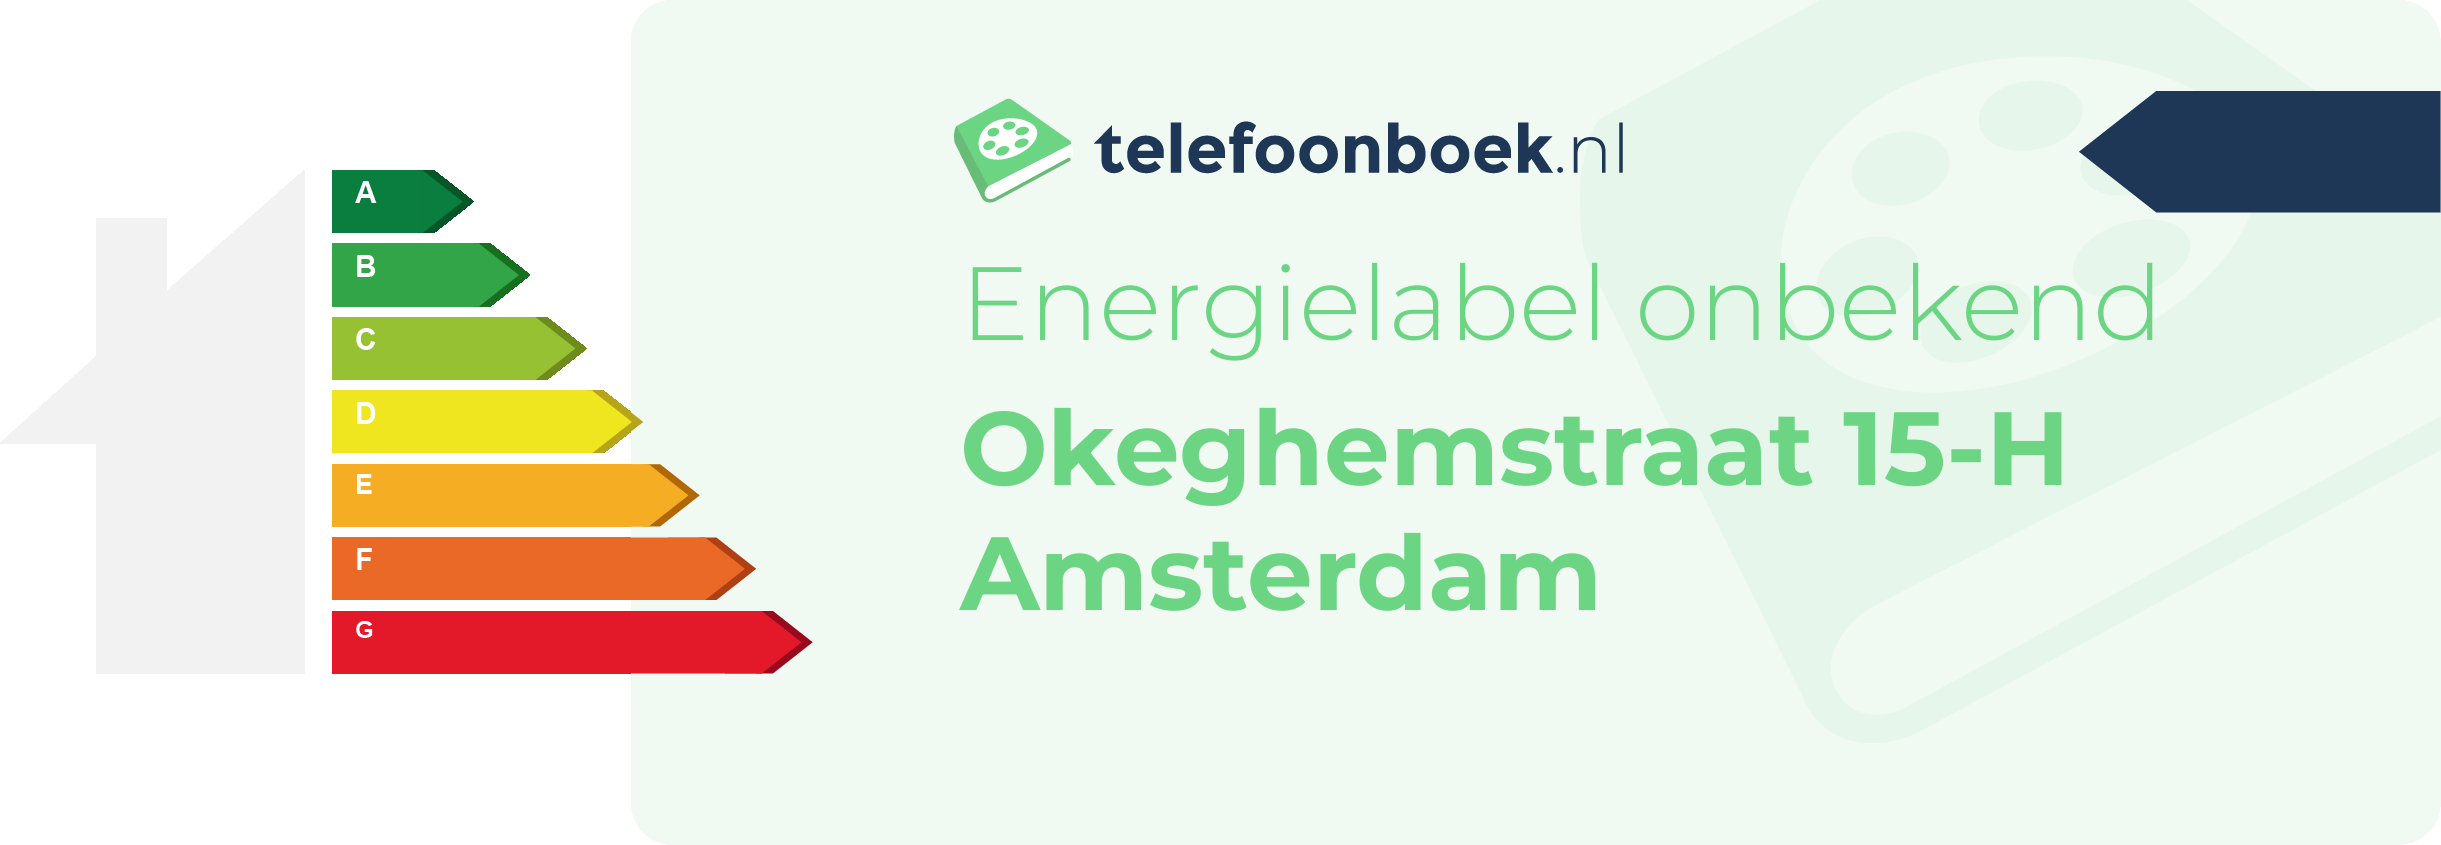 Energielabel Okeghemstraat 15-H Amsterdam